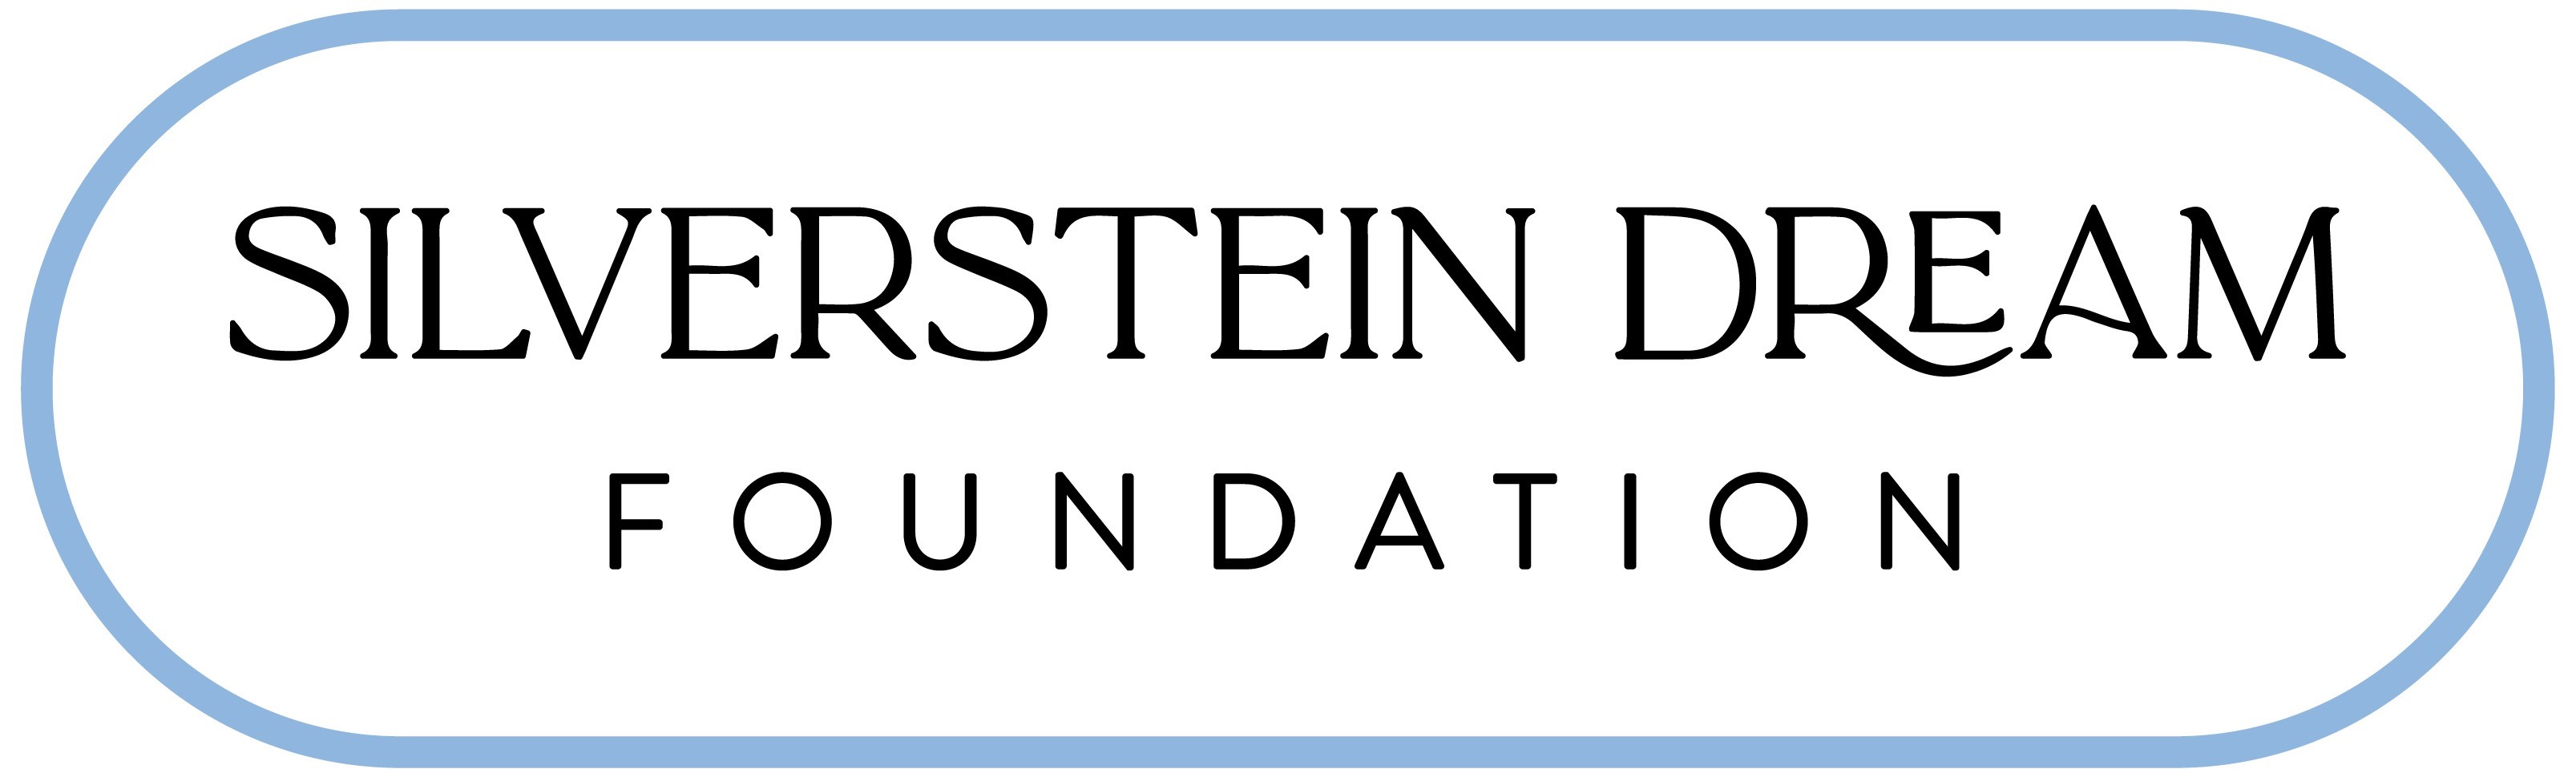 Silverstein Dream Foundation